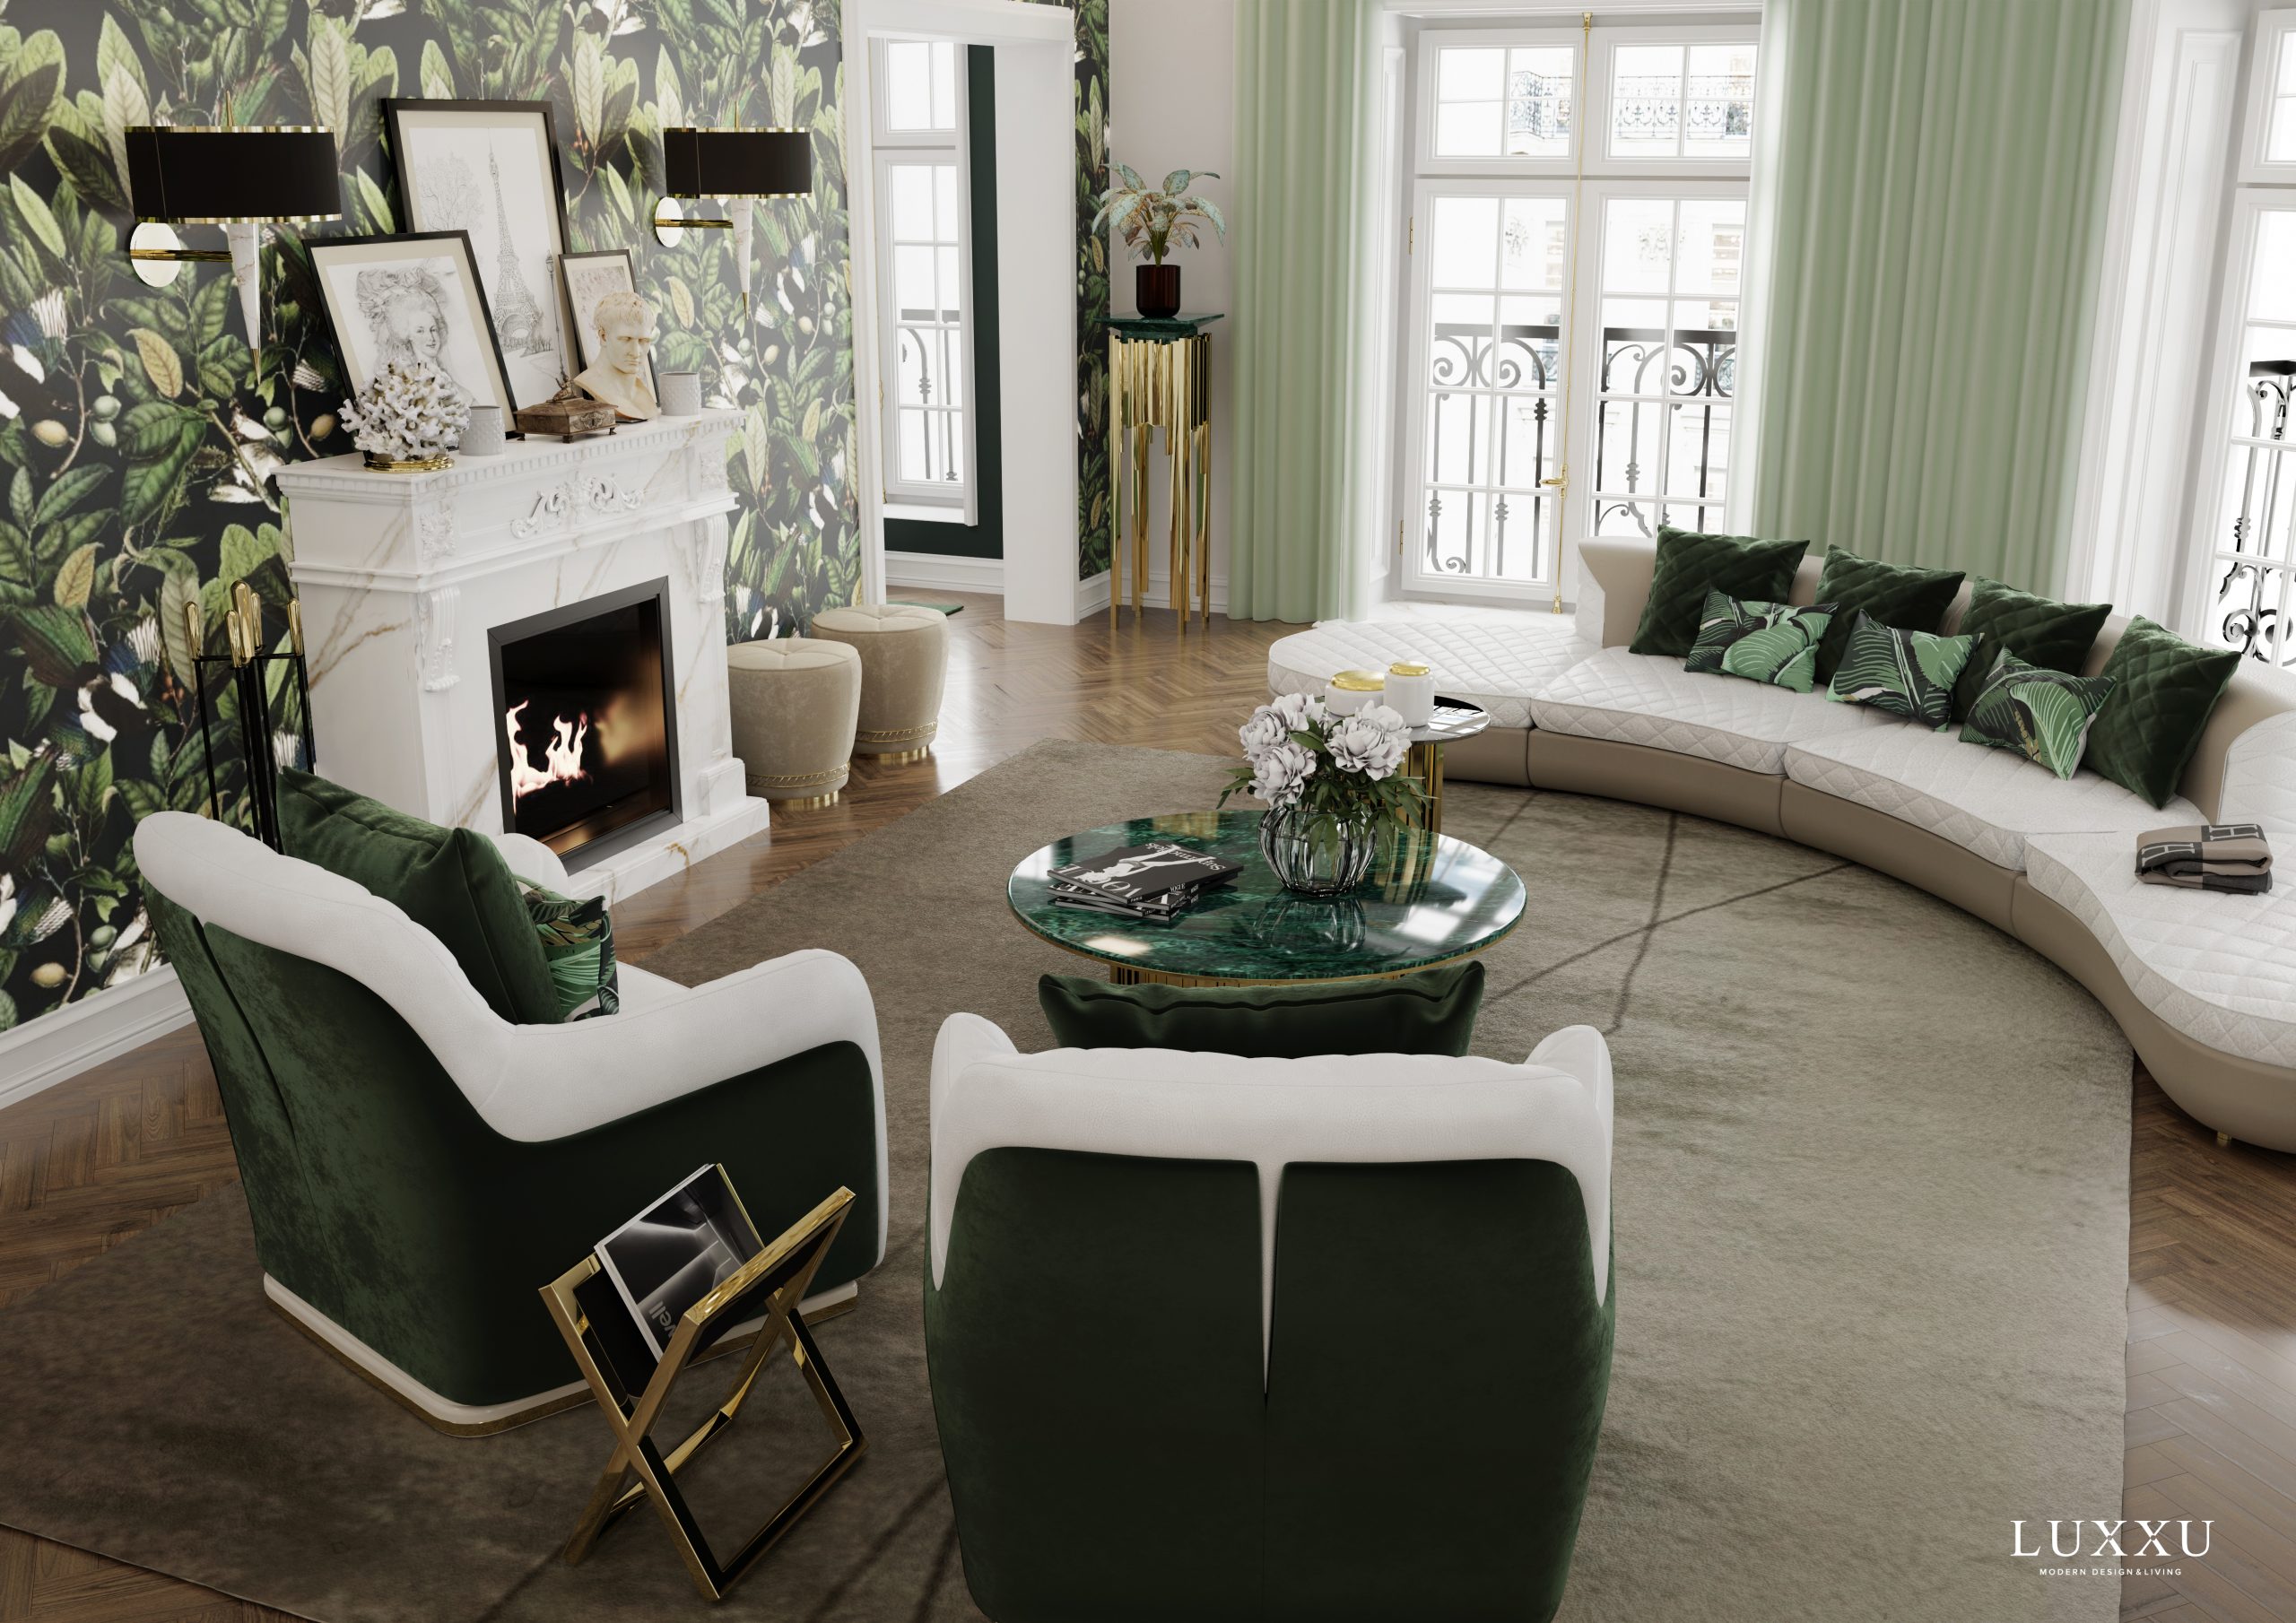 Interior Design Trends in Luxxu's parisian apartment